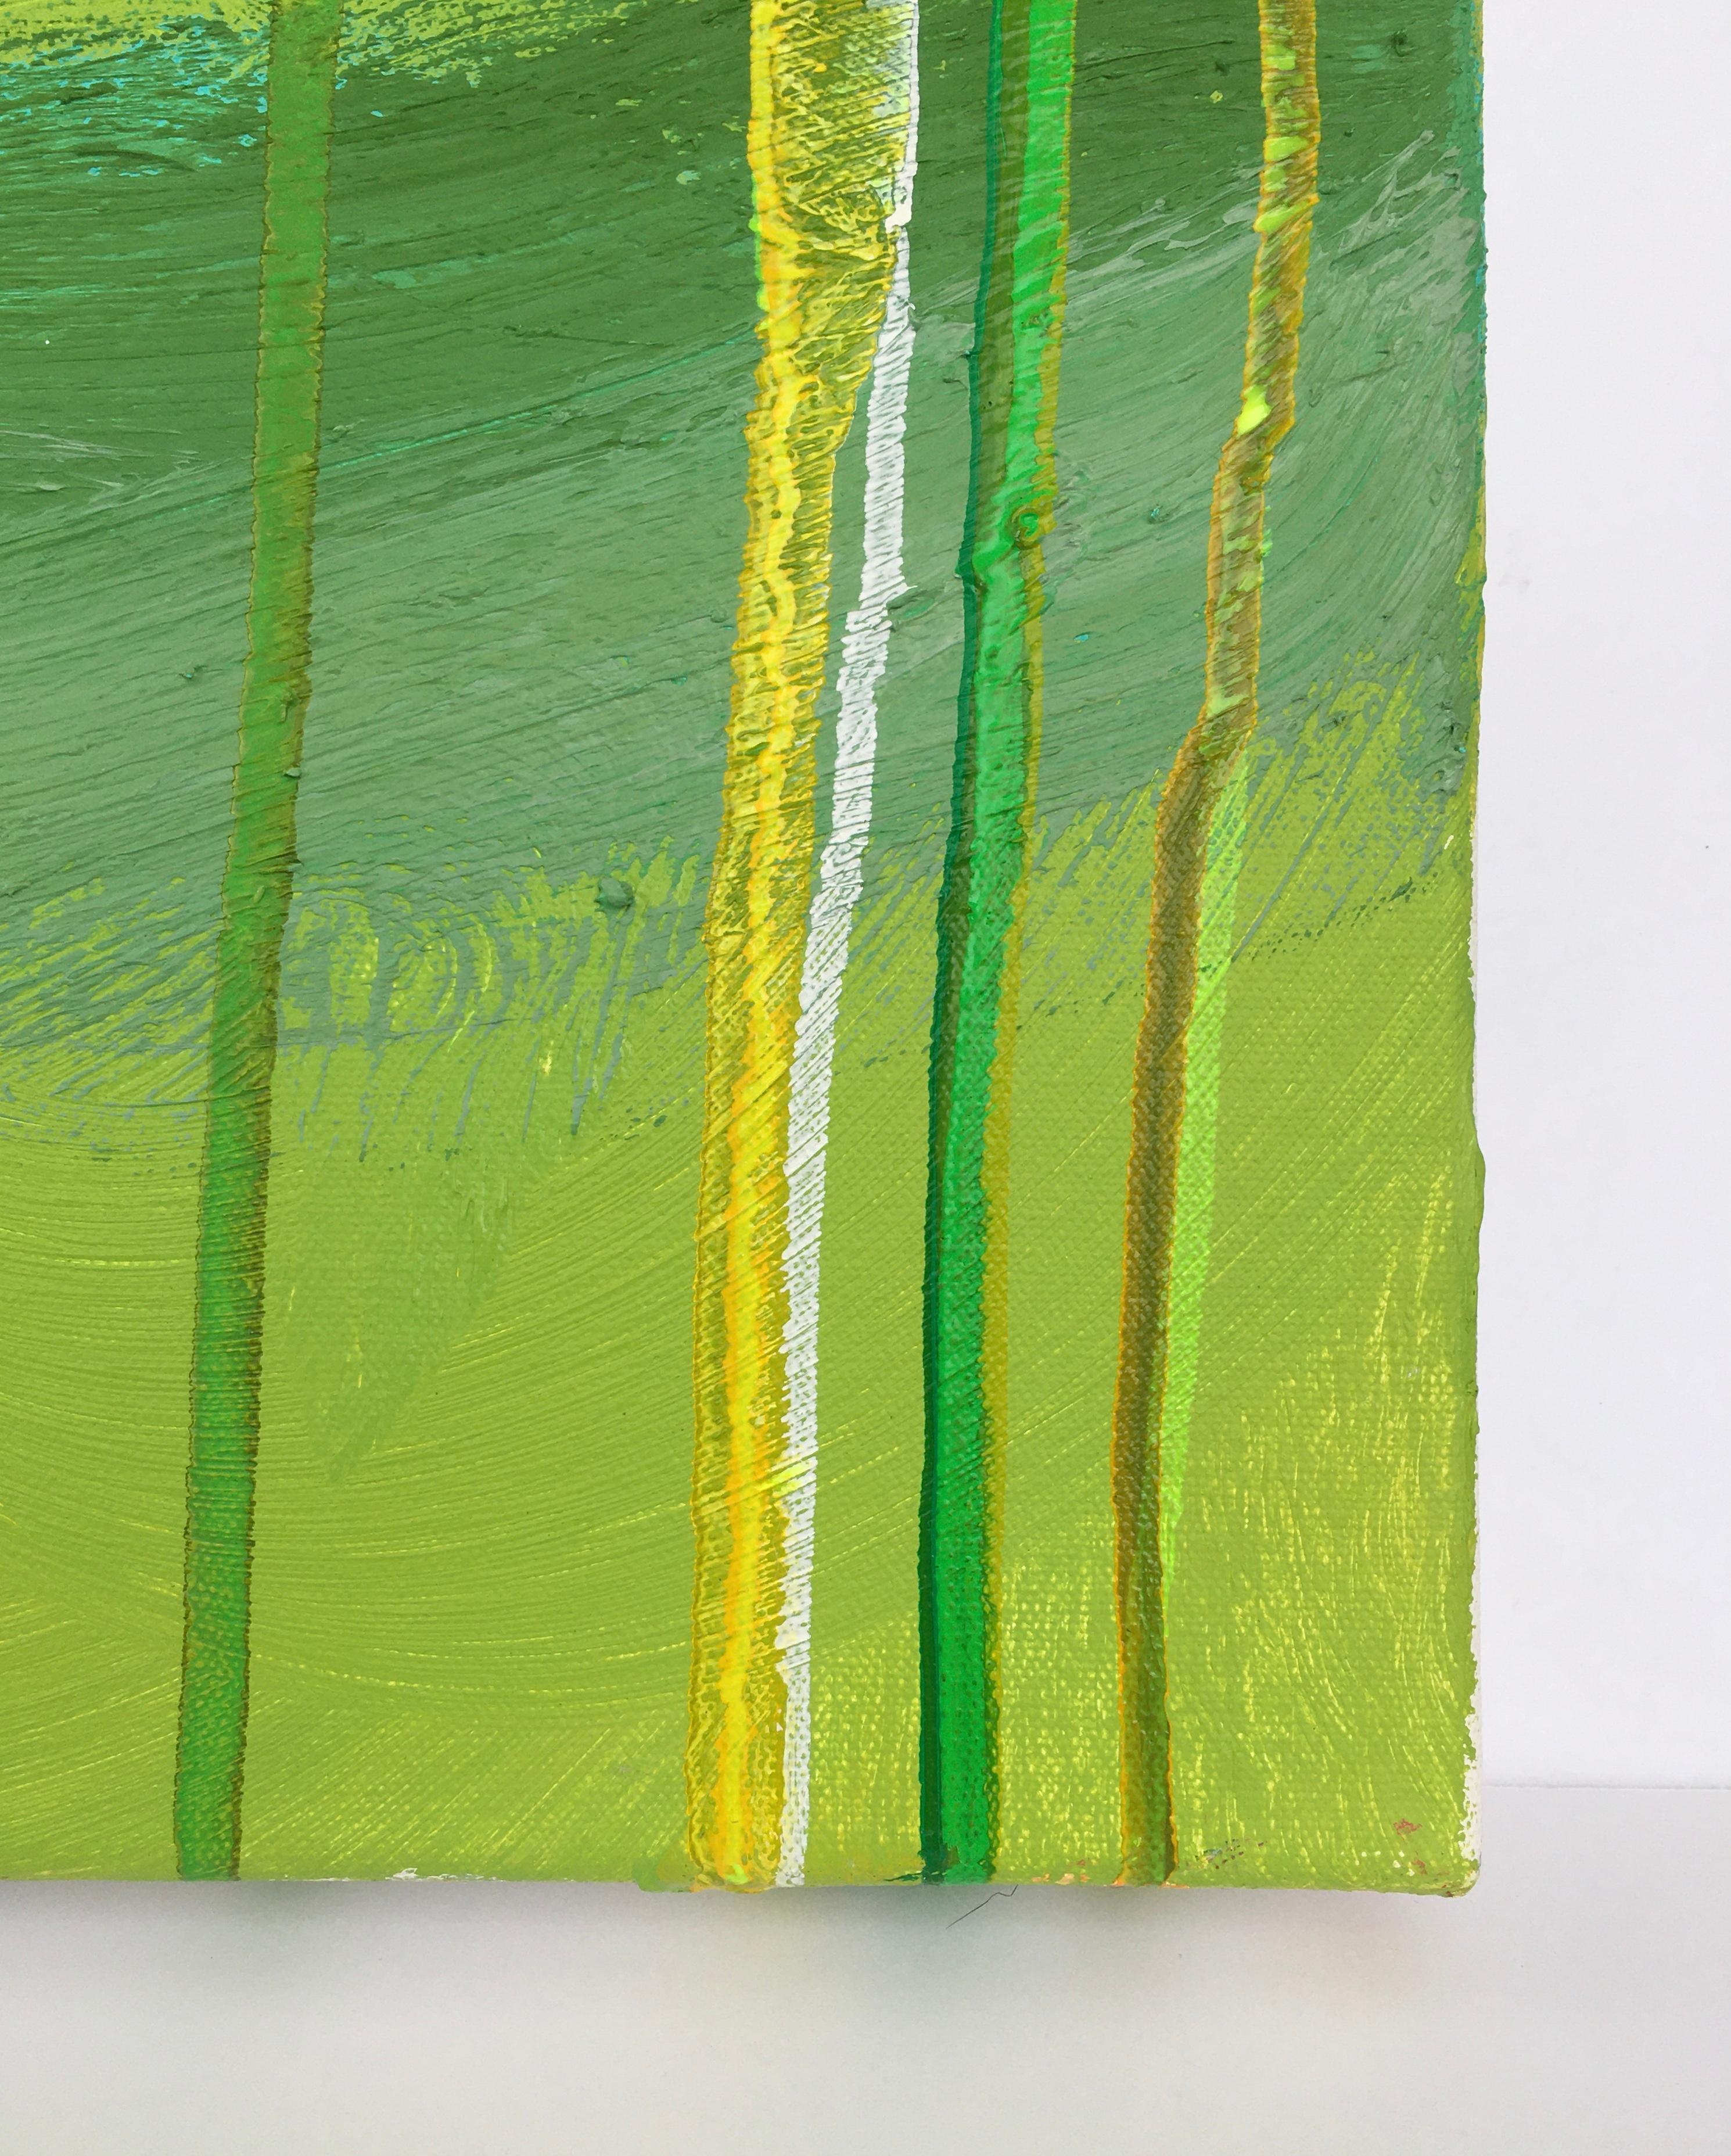 Forest Flood : paysage à l'huile expressionniste abstrait en vert avec lignes verticales - Abstrait Painting par Dennis Alter